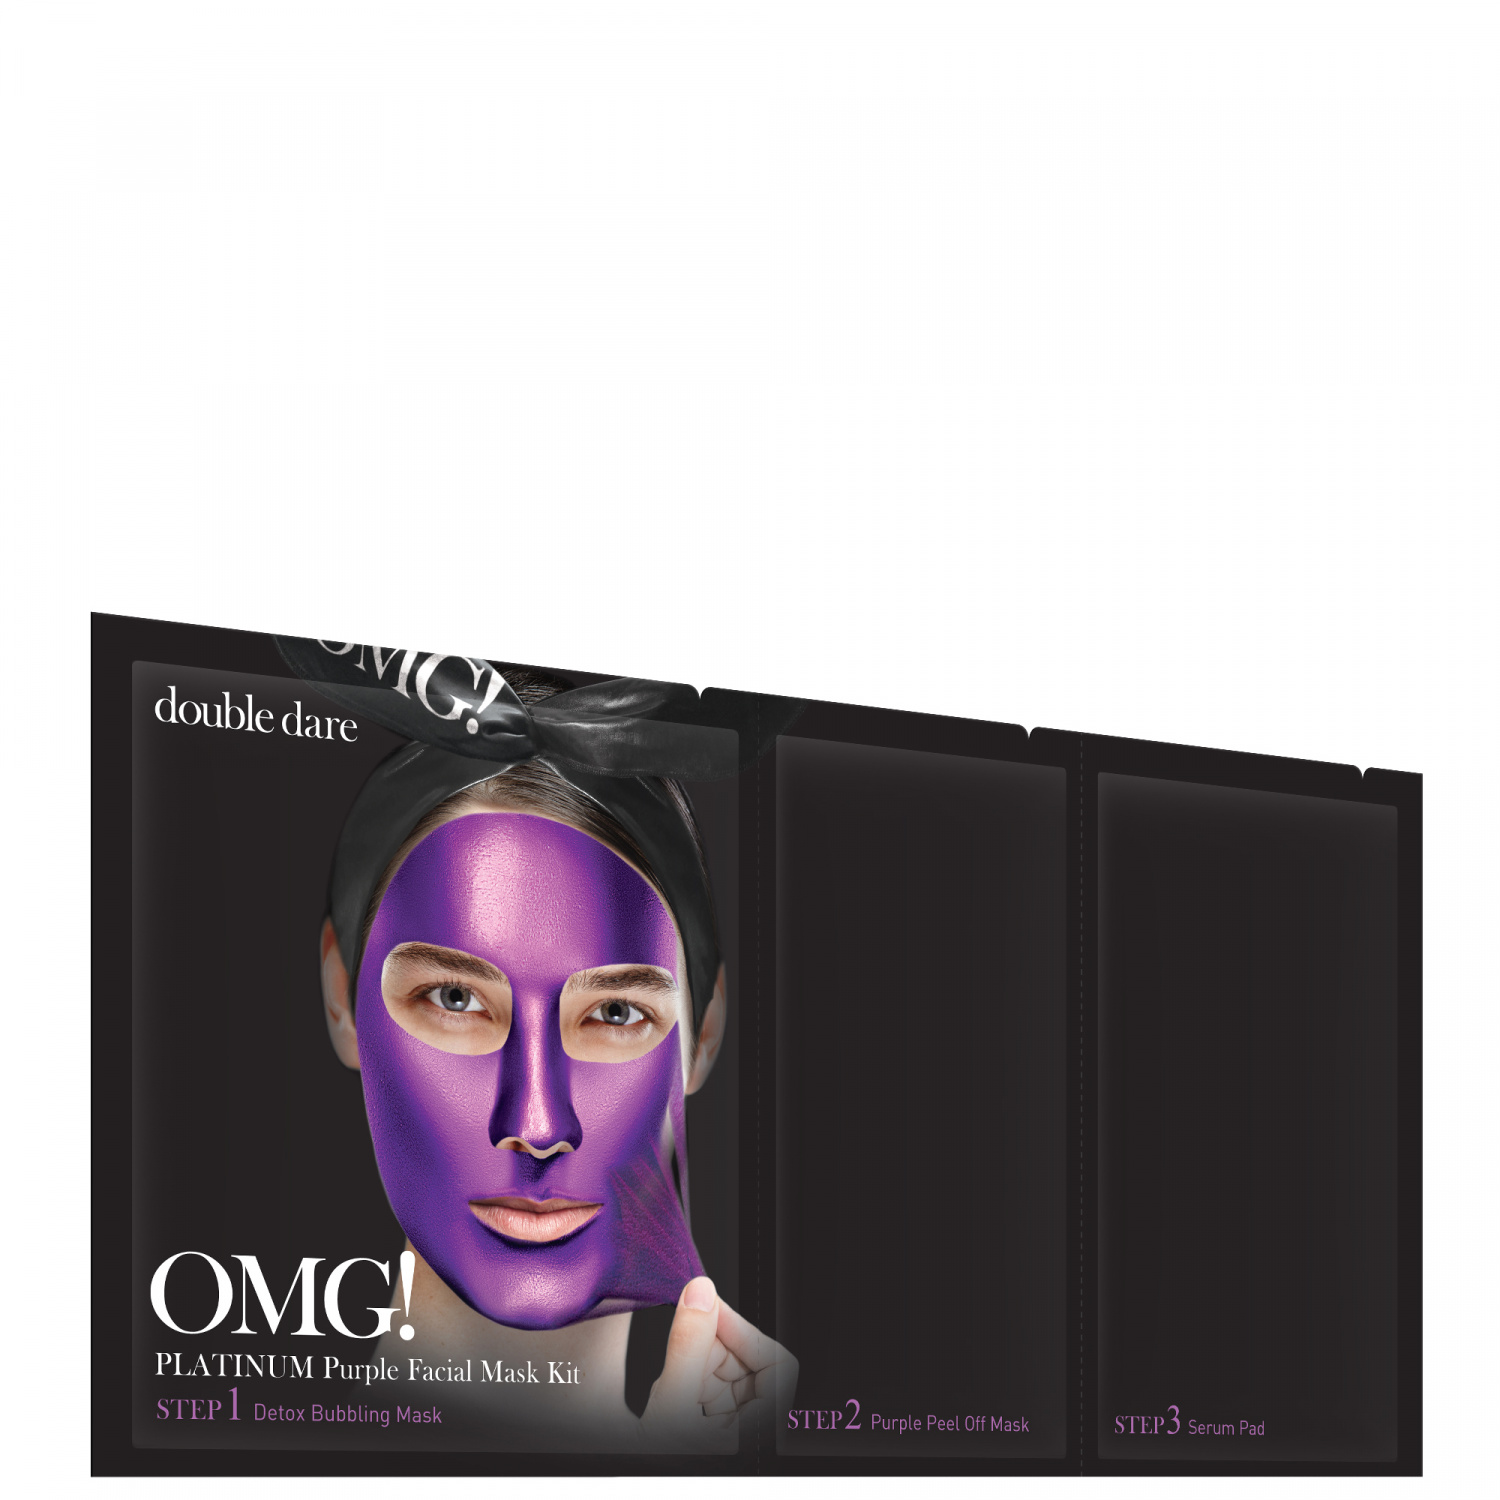 Double Dare OMG! Platinum PURPLE Facial Mask Kit - интернет-магазин профессиональной косметики Spadream, изображение 40720